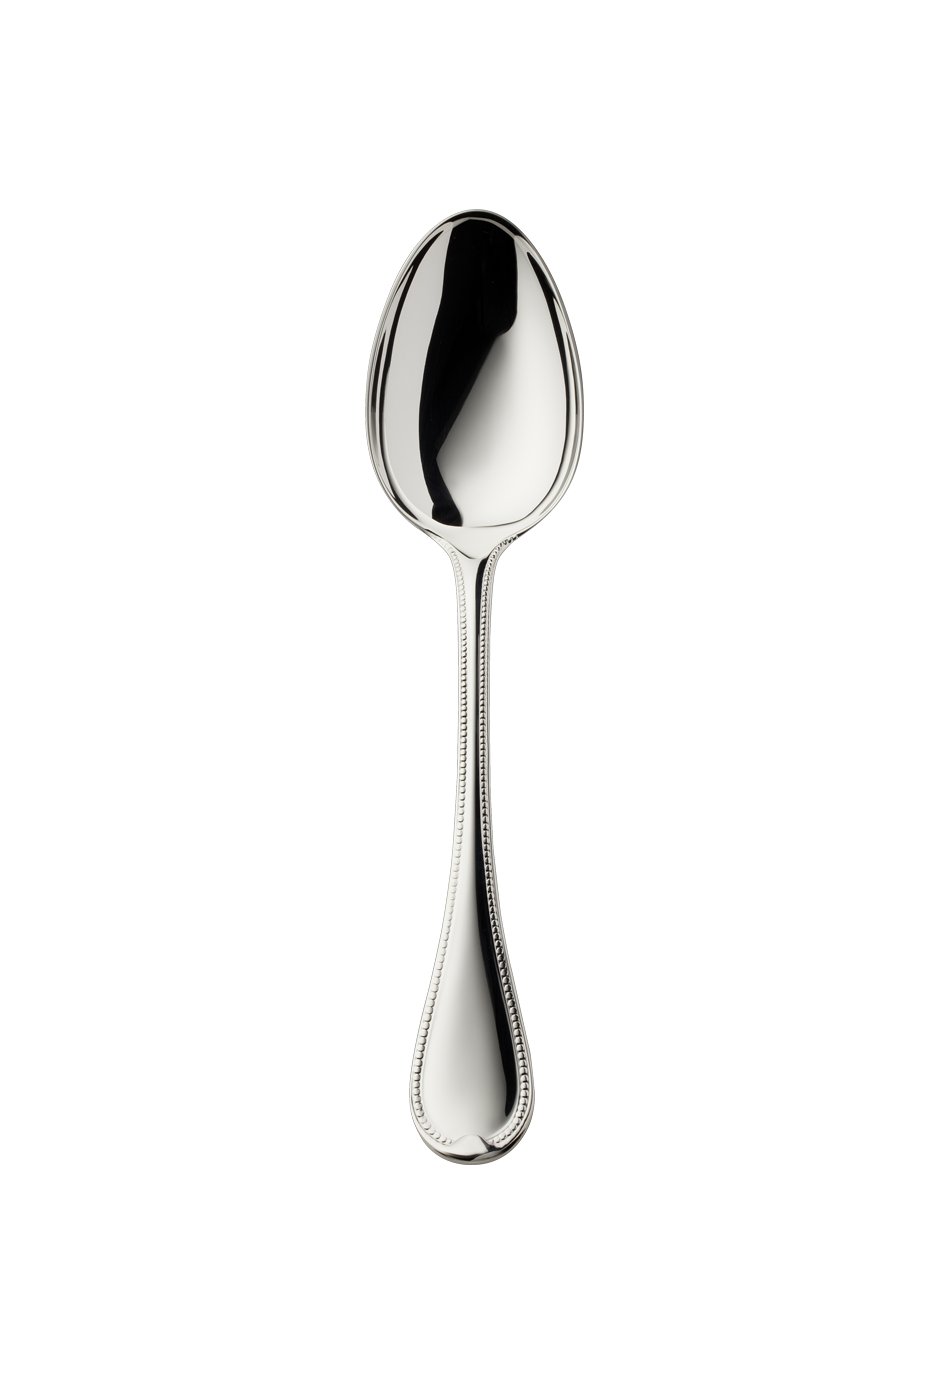 Französisch-Perl Menu Spoon (150g massive silverplated)